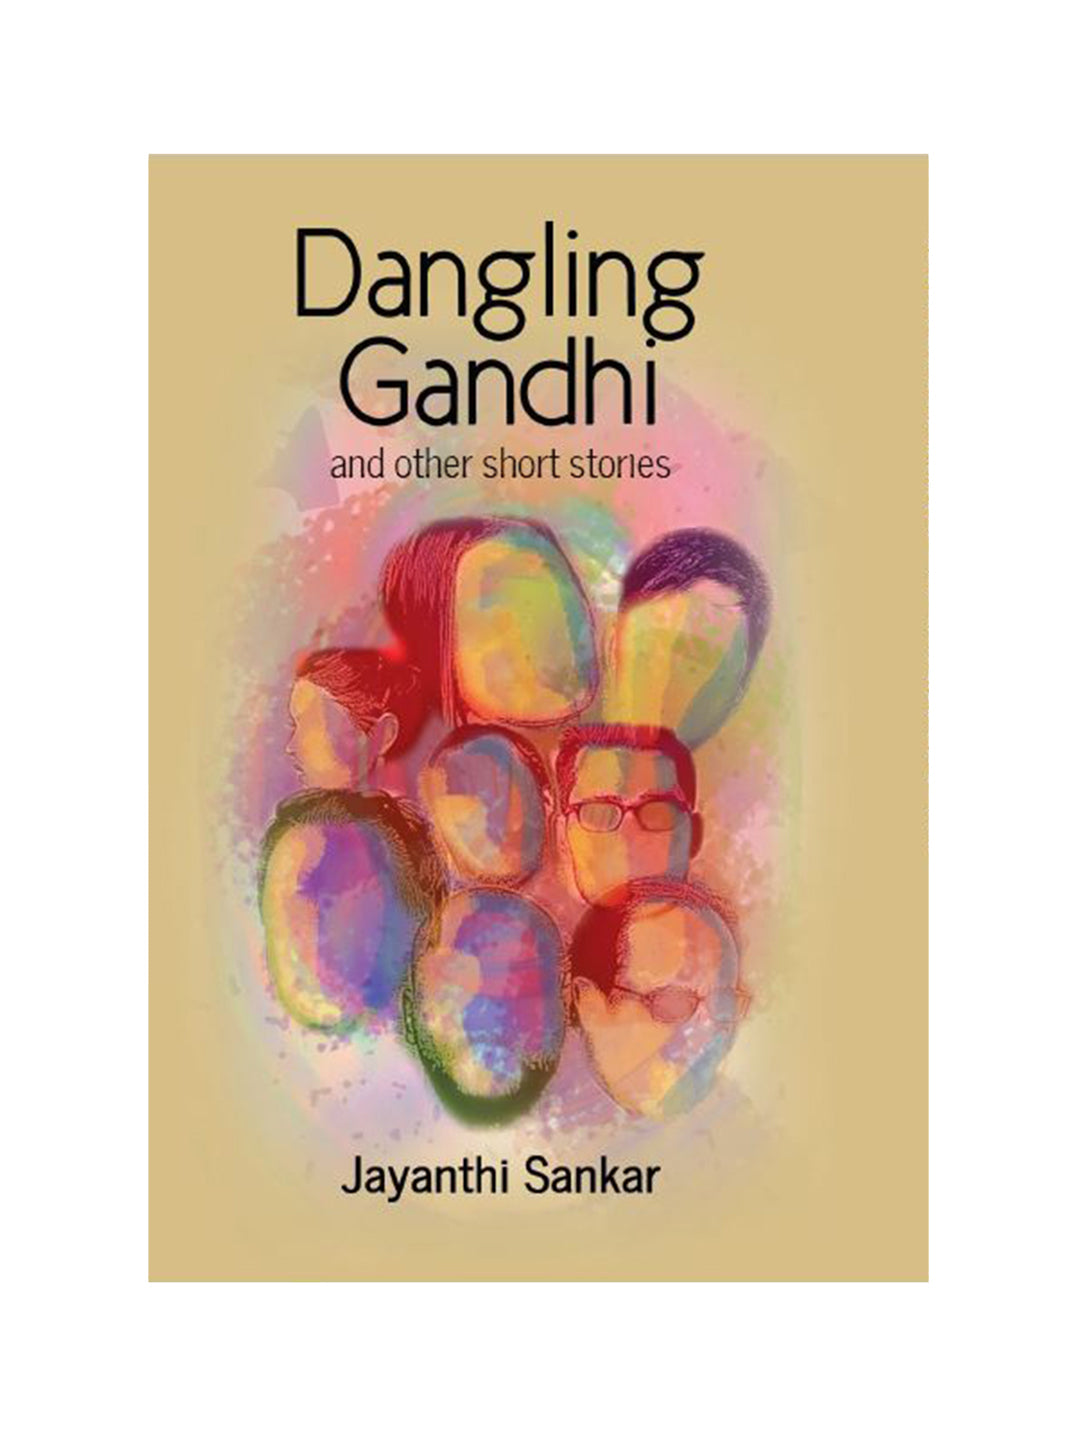 Dangling Gandhi - Jayanthi Sankar - View 1